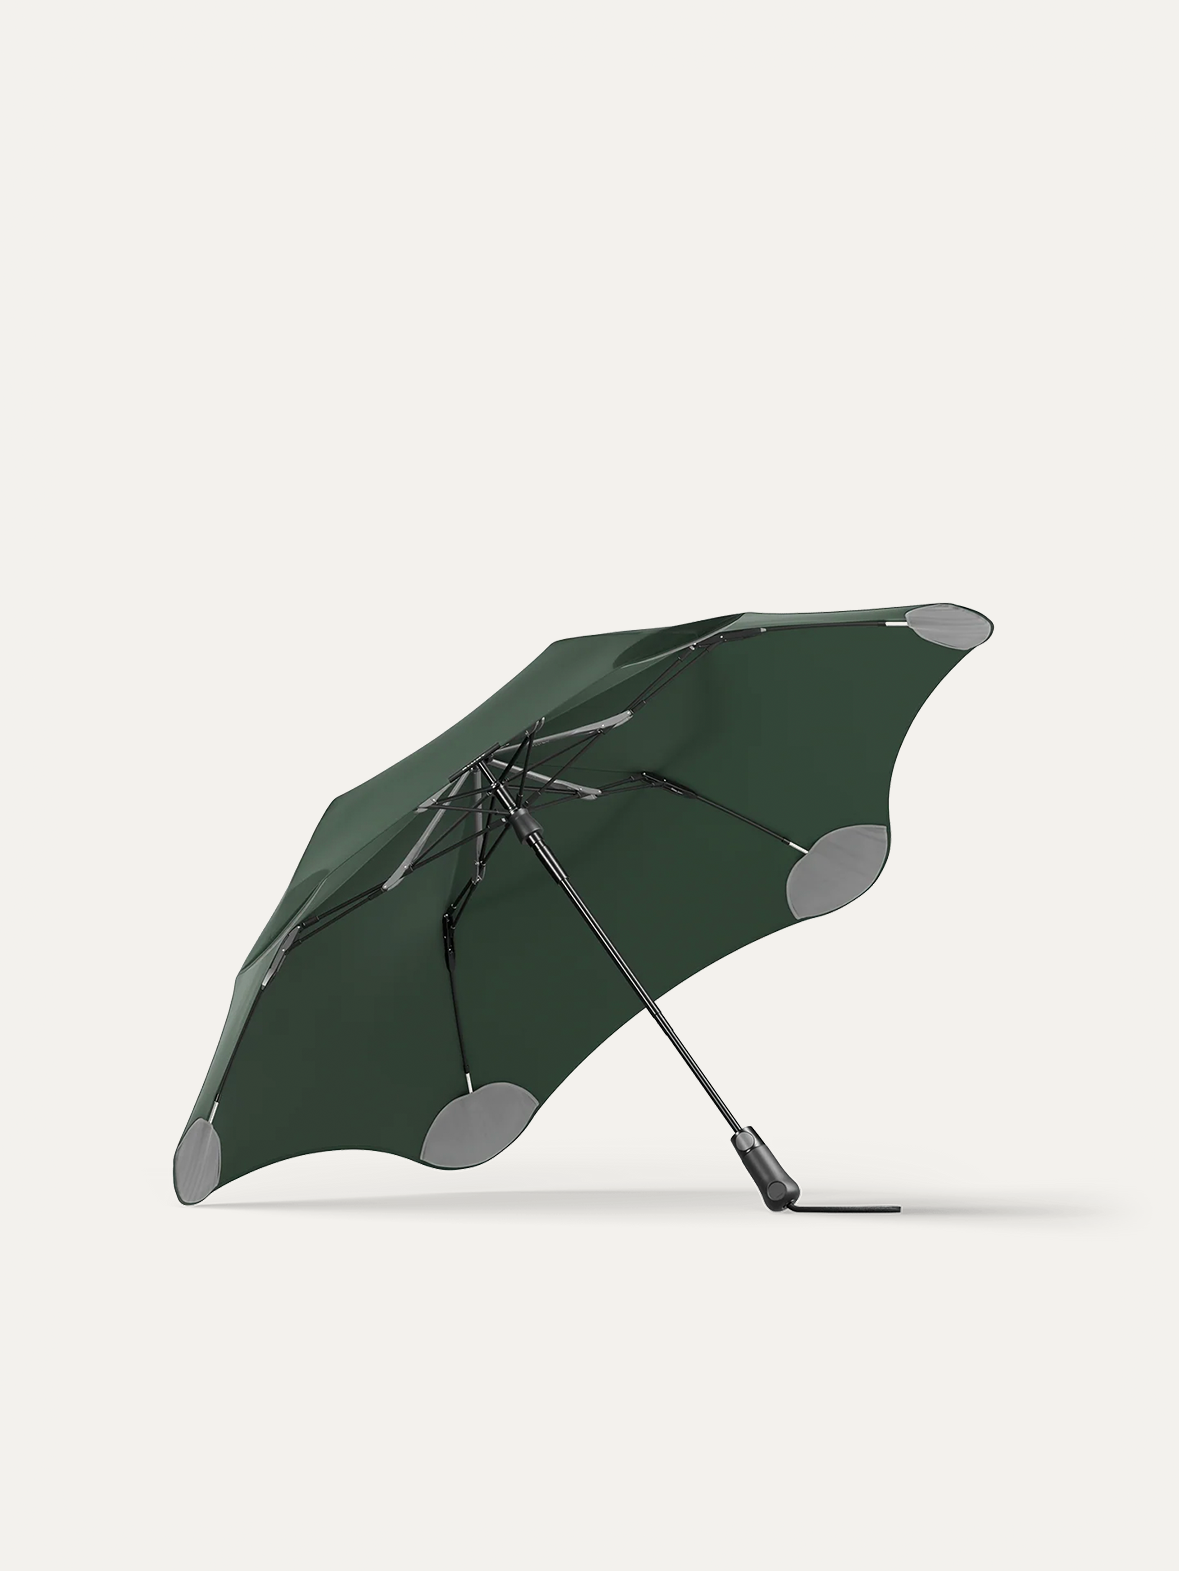 Blunt Metro Umbrella | Compact & Windproof | Buy Now